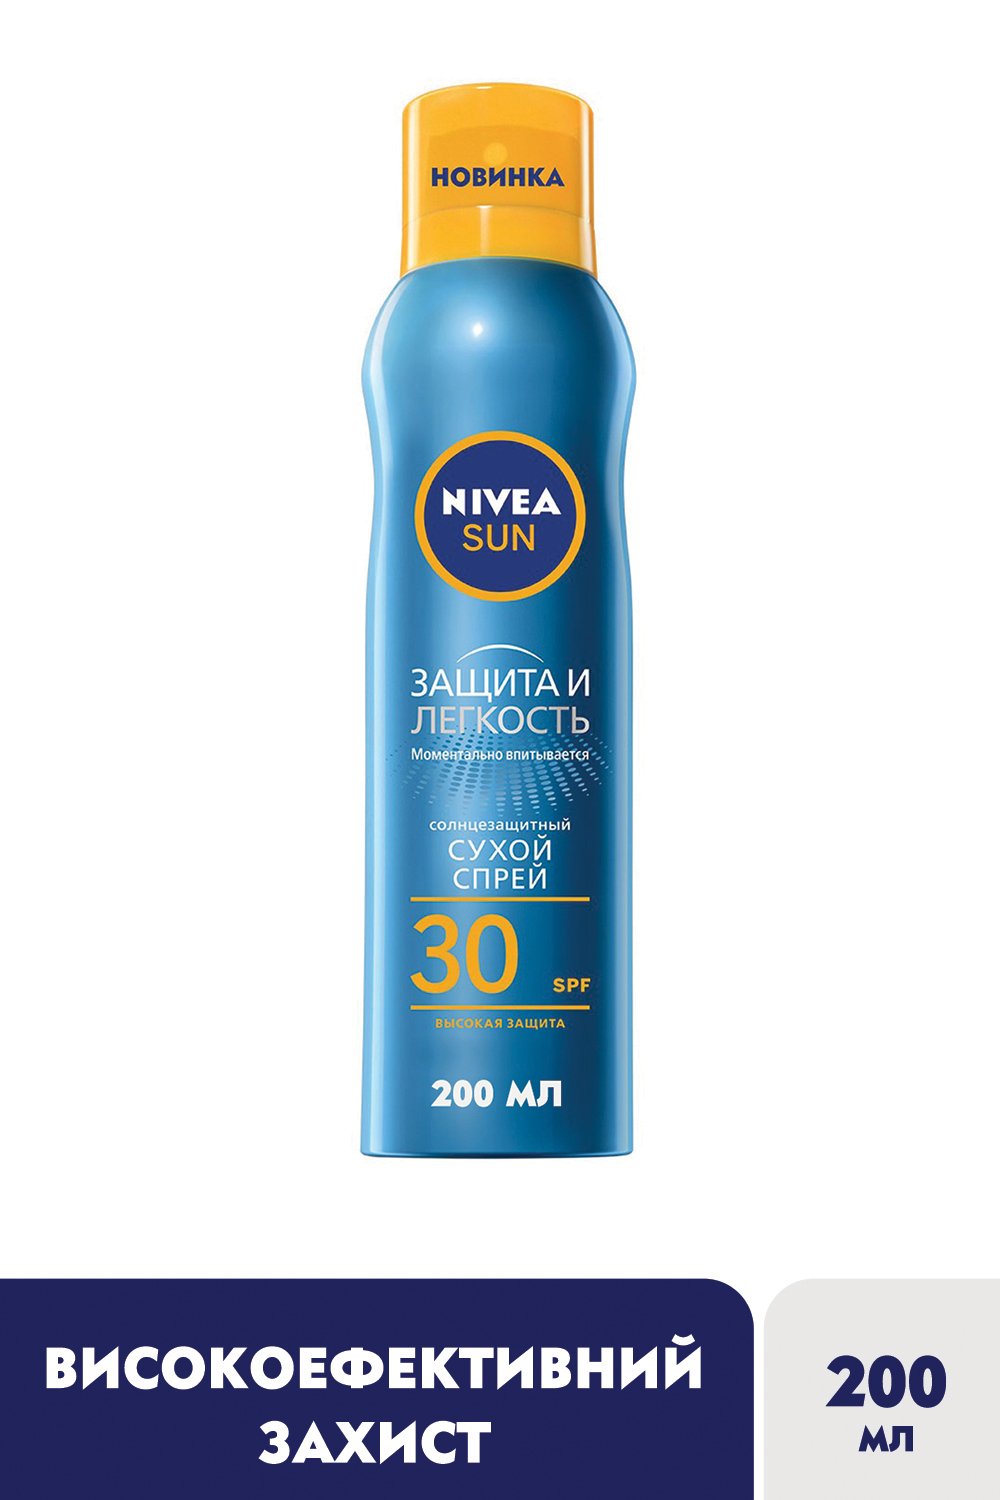 Солнцезащитный сухой спрей Nivea Sun Защита и легкость, SPF 30, 200 мл - фото 3